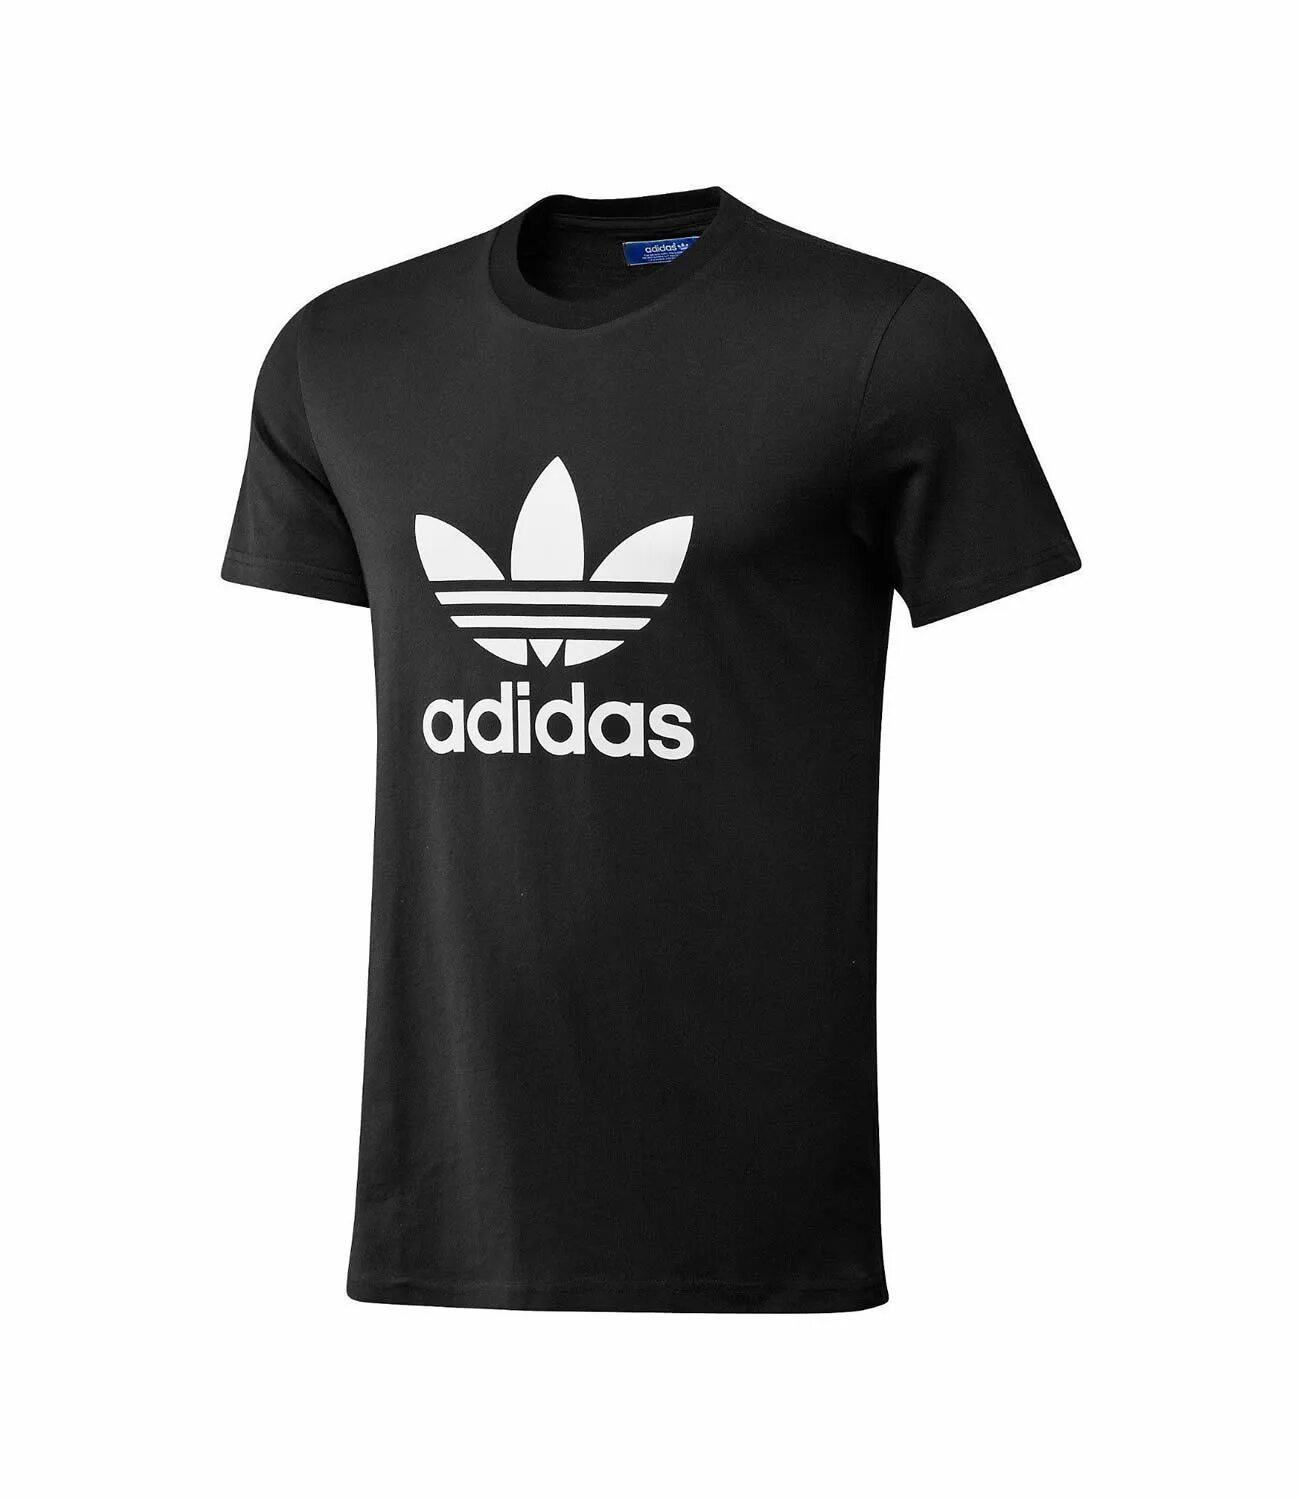 Разные адидас. Adidas Printshop. T-Shirt adidas Black. Адидас т ширт. Adidas t Shirt New collection.